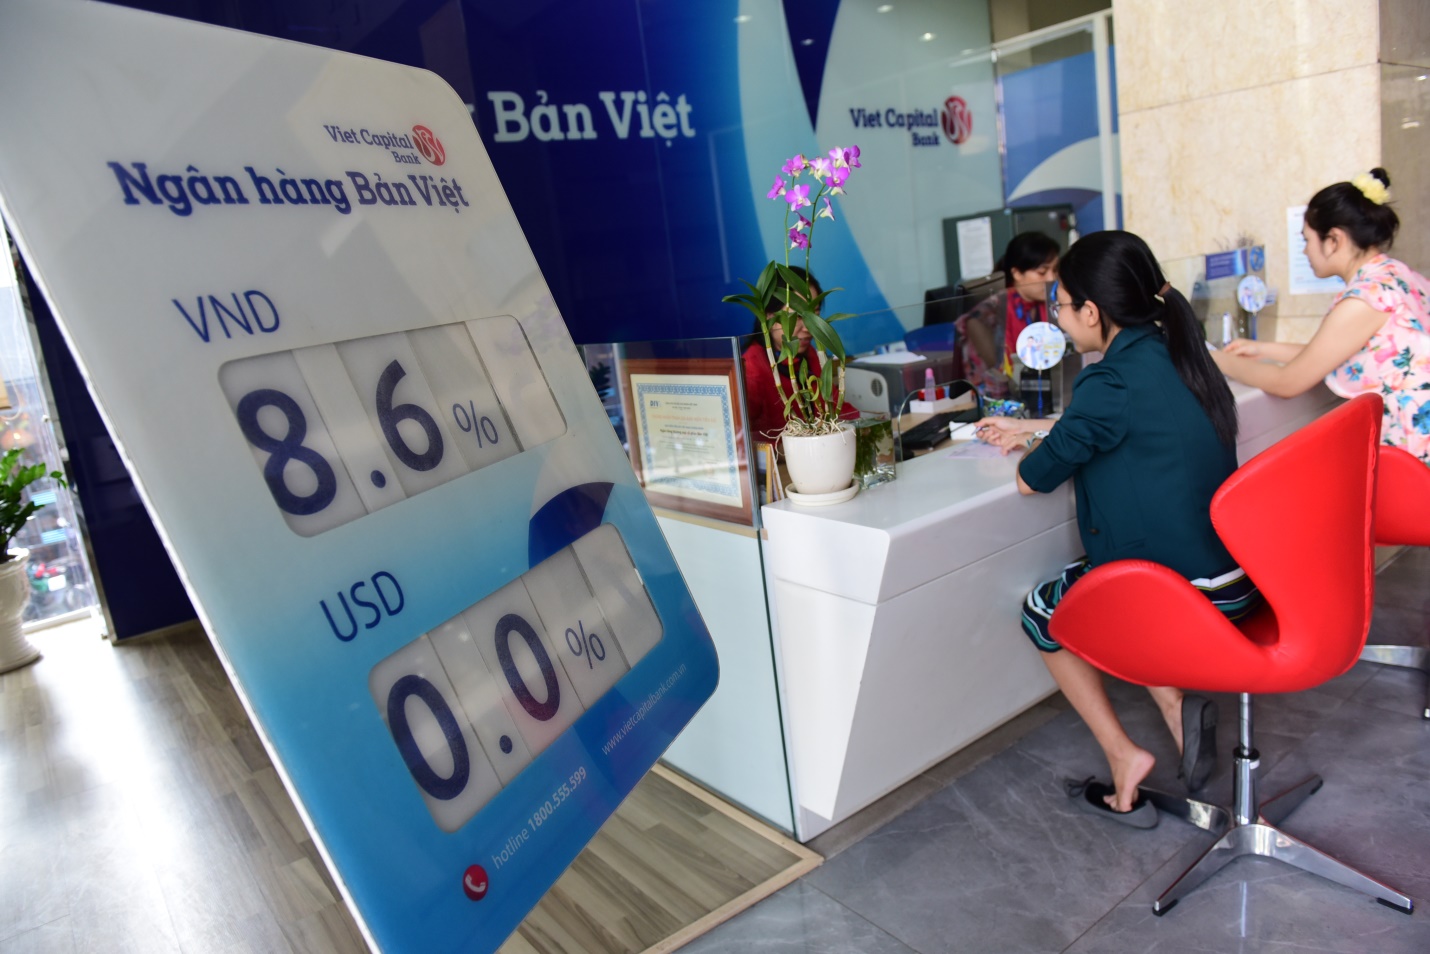 Ngân hàng Bản Việt không chỉ ưu đãi lãi suất gửi tiết kiệm thuộc top cao nhất khối nhà băng, mà còn tặng vàng và tiền mặt đầu xuân cho 100% khách hàng từ ngày 11-2 đến 6-3.